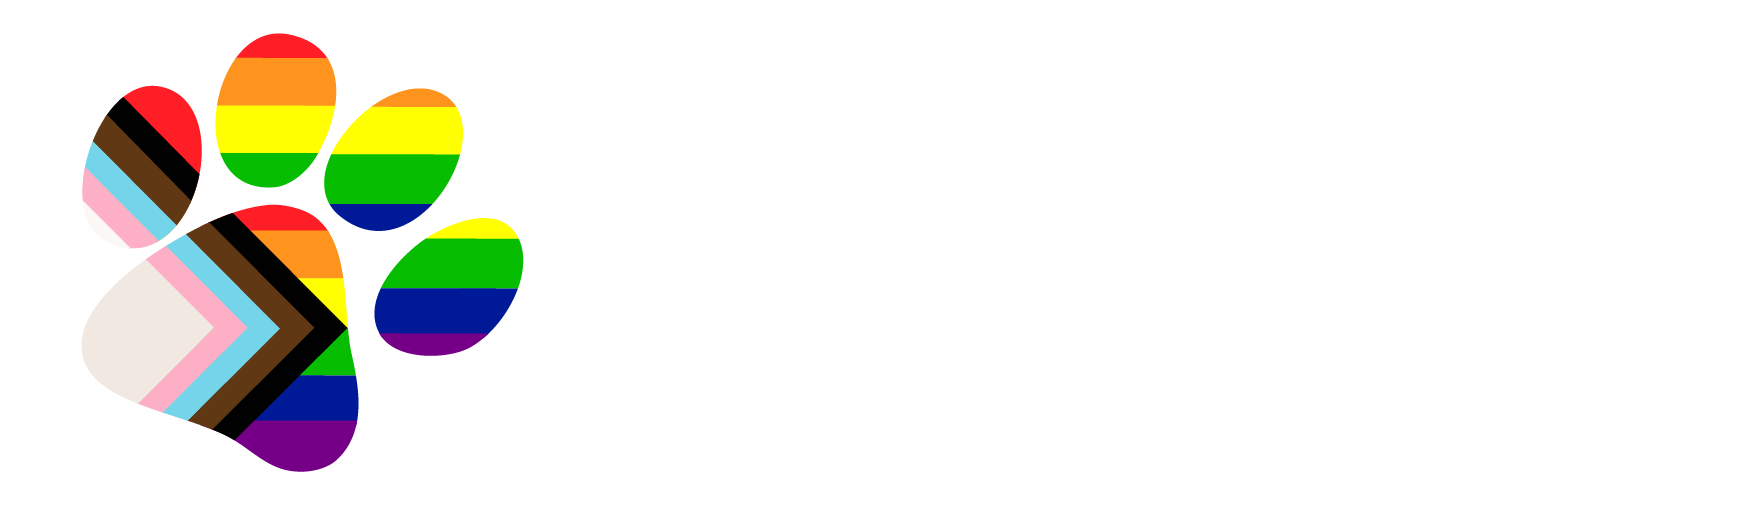 Mississippi State University LGBTQ+ Safe Zone